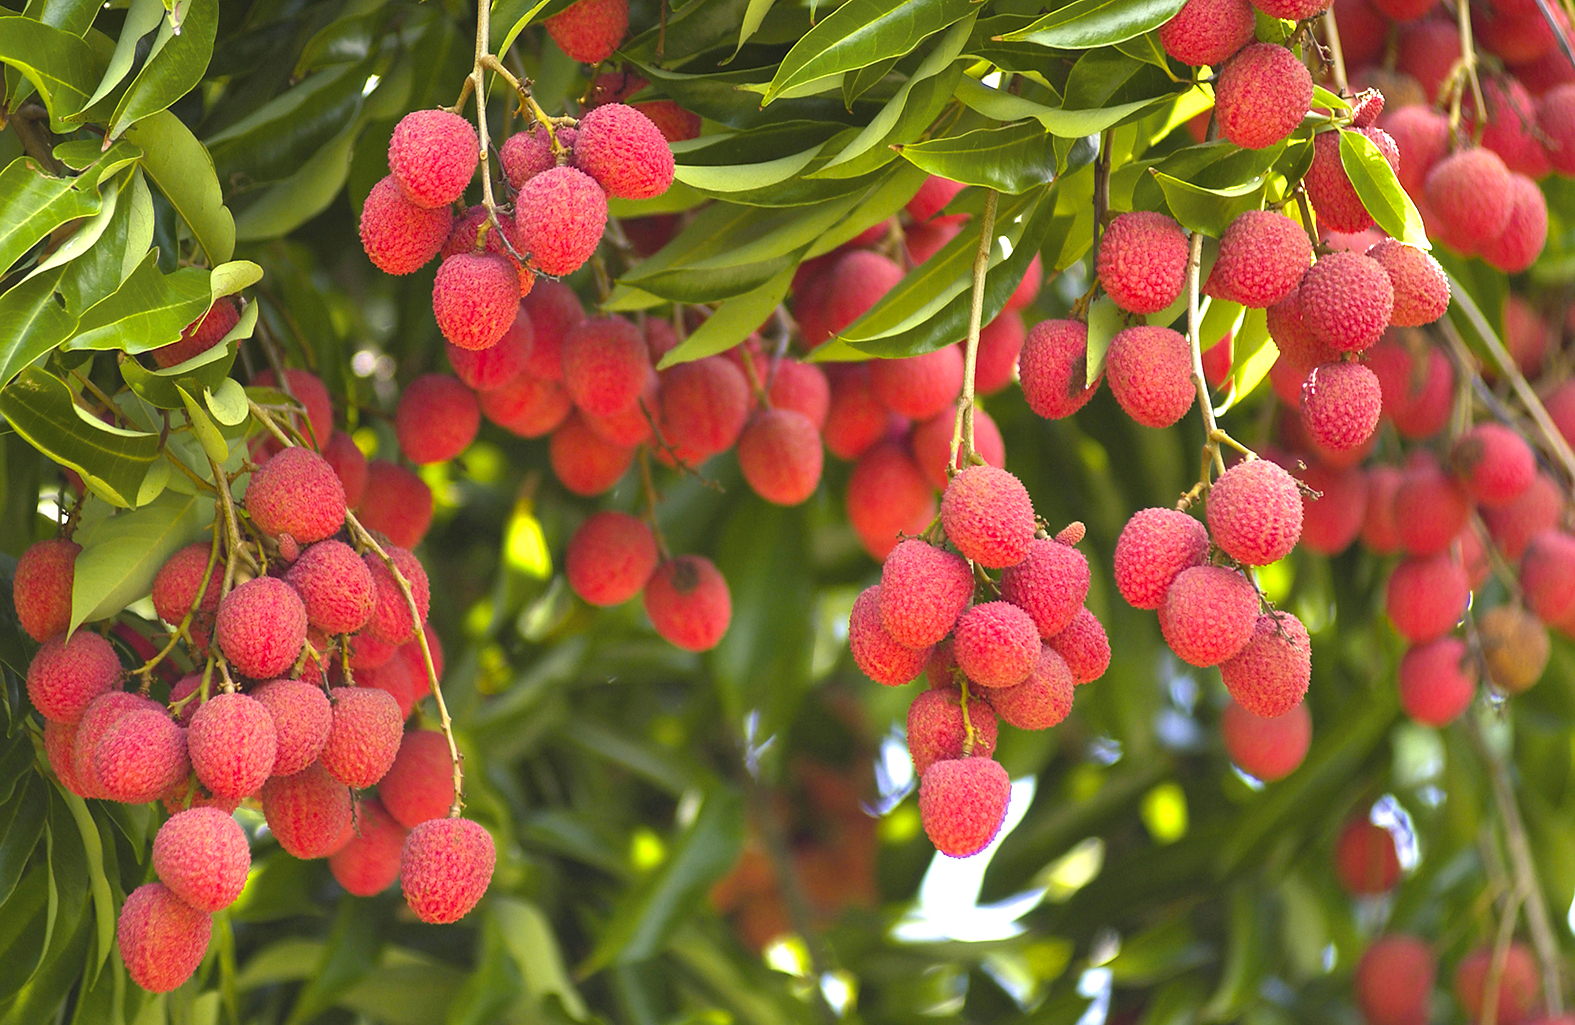 Les litchis, fruits exotiques très recherchés issus de La Réunion